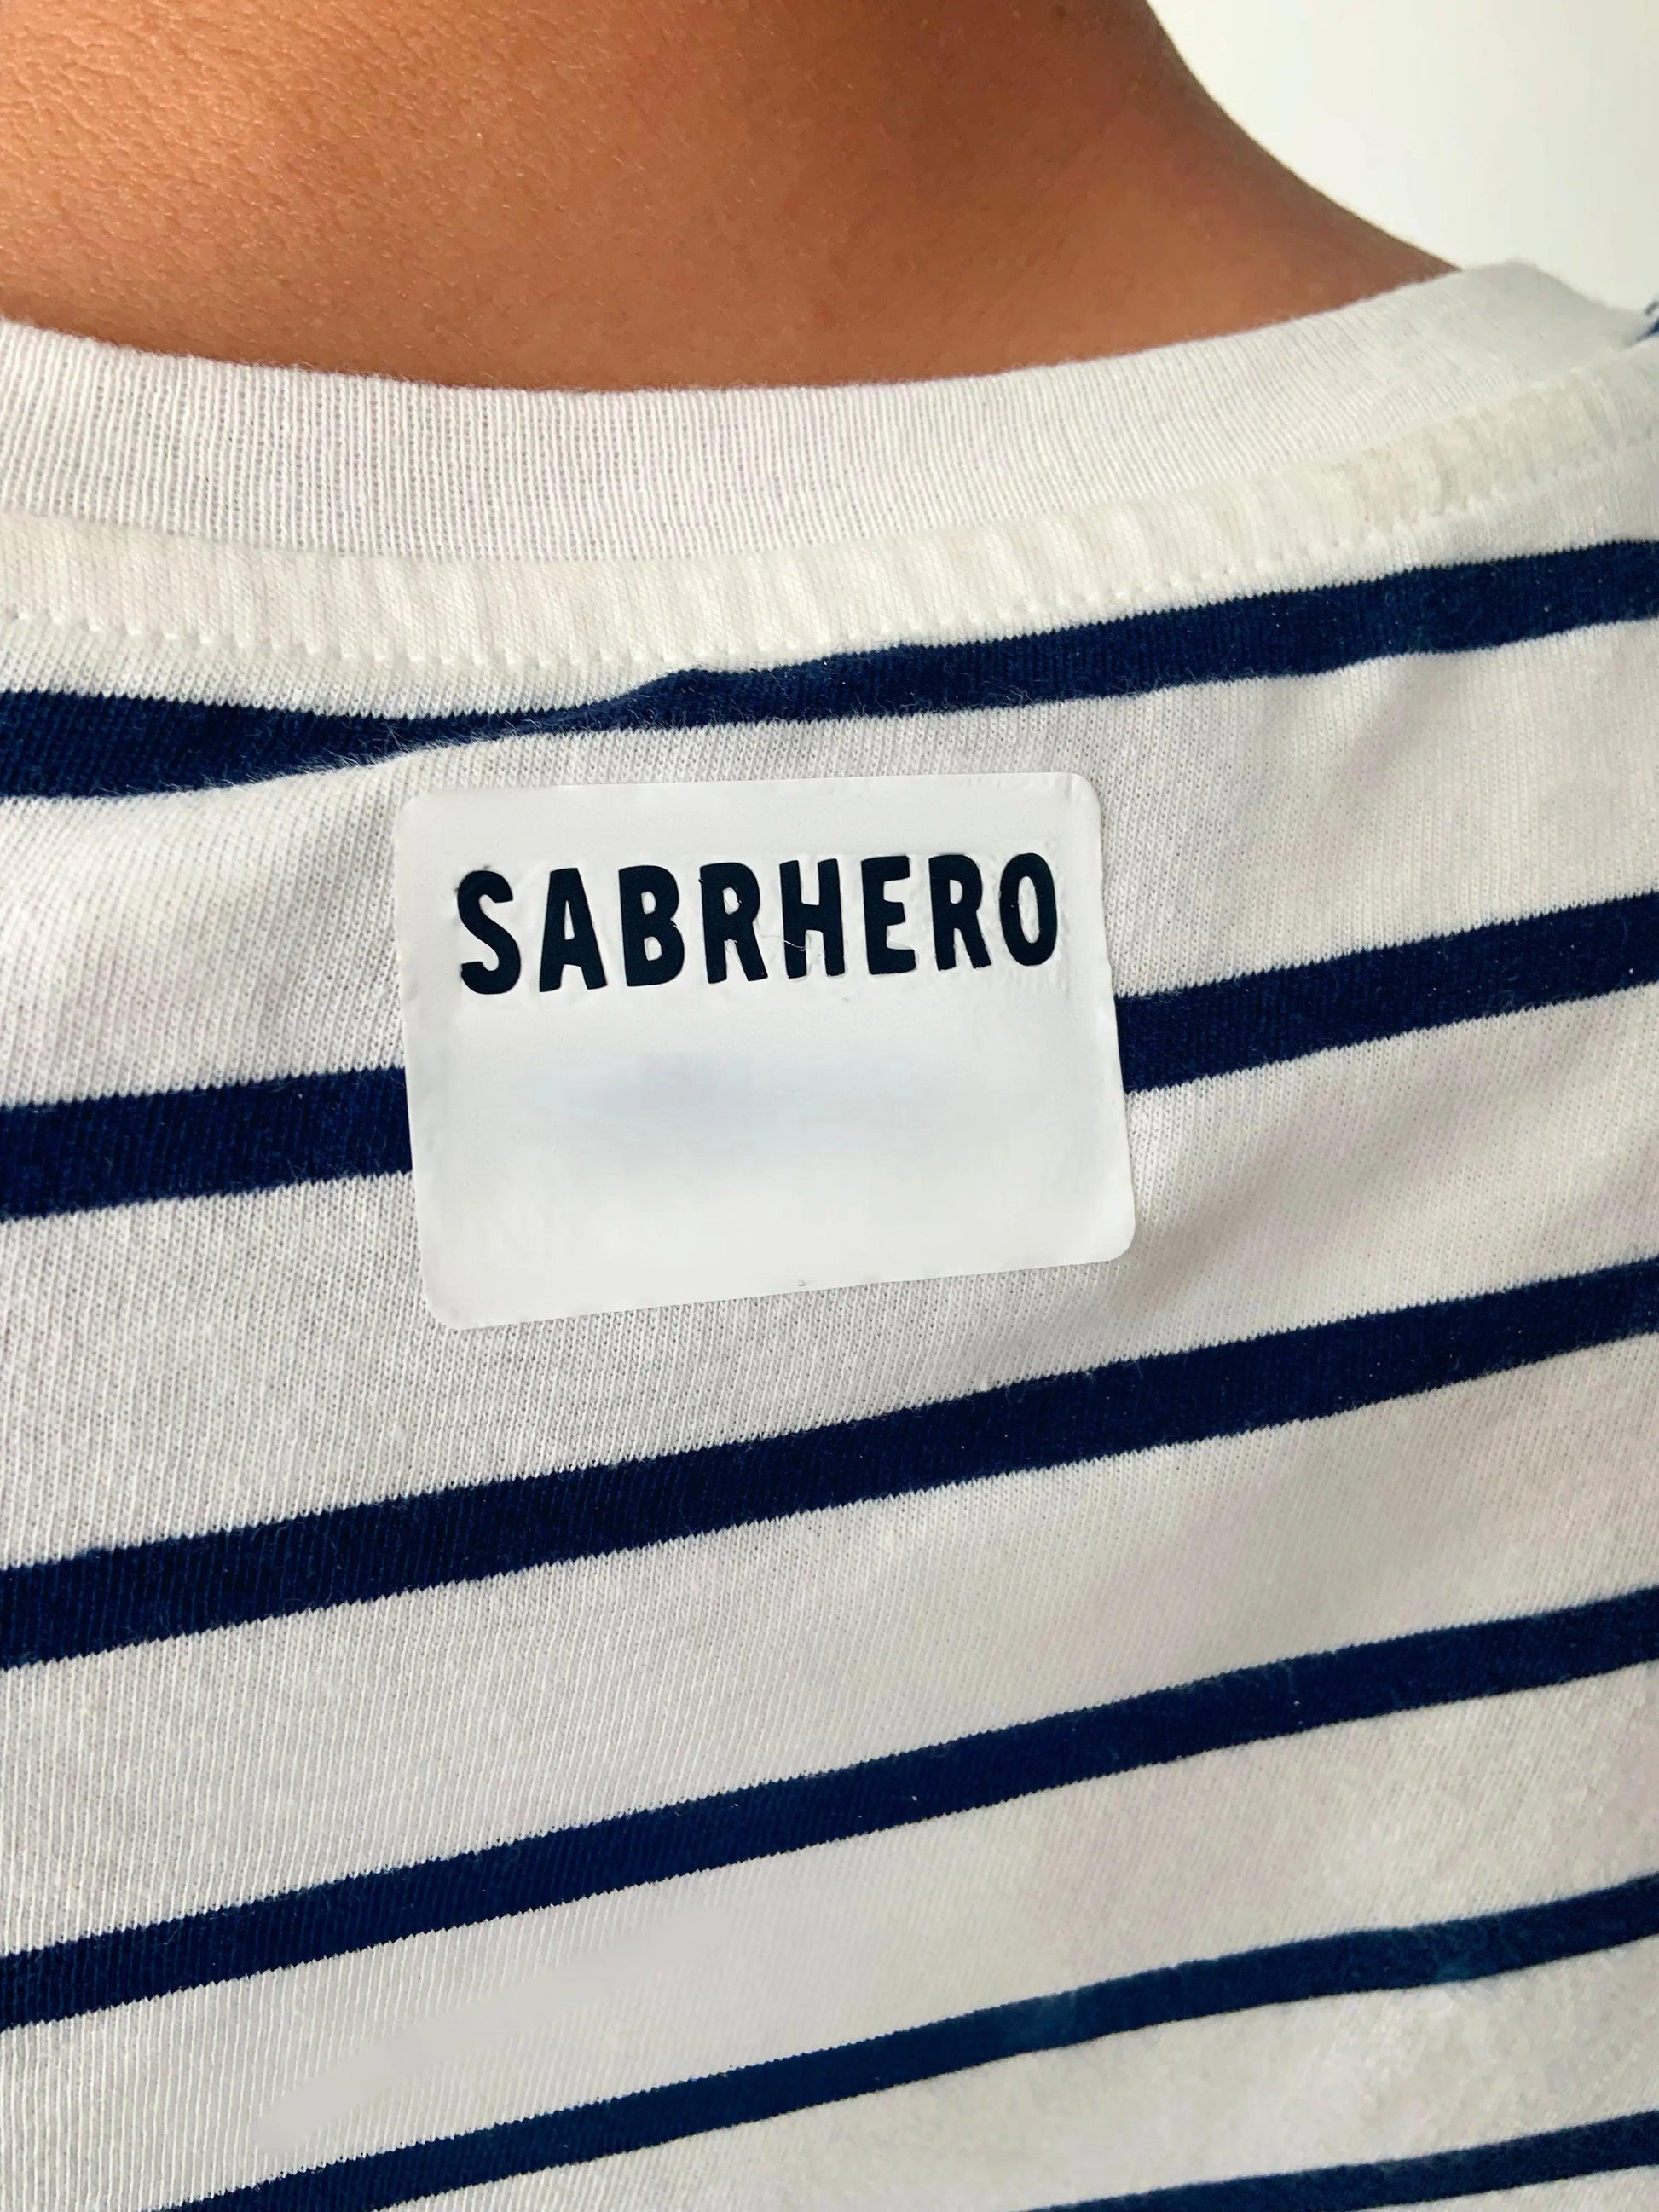 SABRHERO Unisex T-shirt - Luxury tennis apparel by SABRHERO | SABRHERO